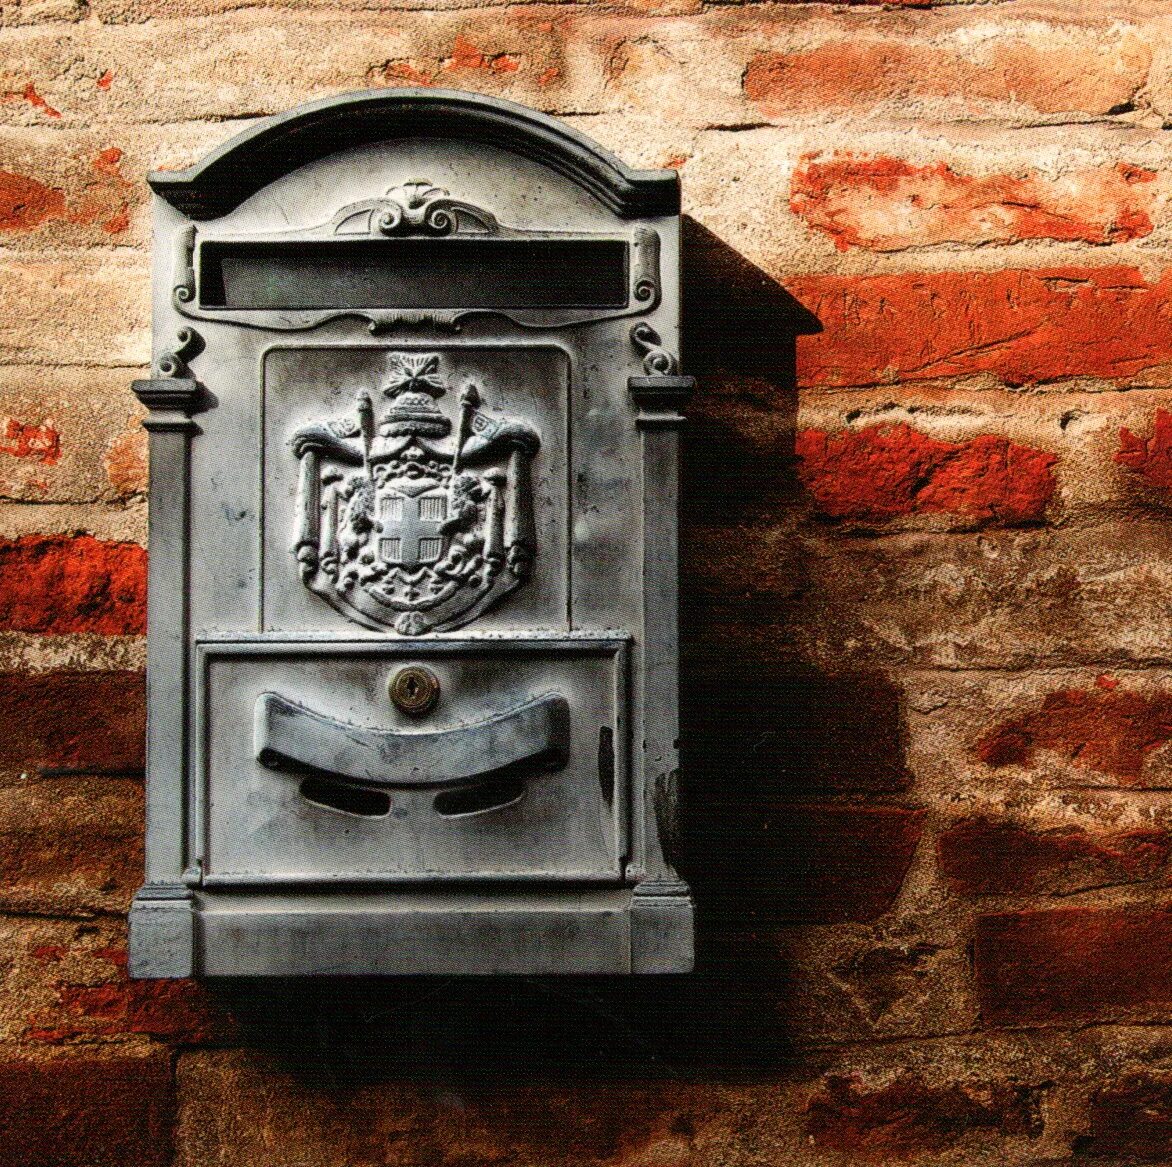 Почтовый ящик. Каменный почтовый ящик. Старый почтовый ящик. Почтовый ящик на кирпичной стене. Почтовый ящик 19 века